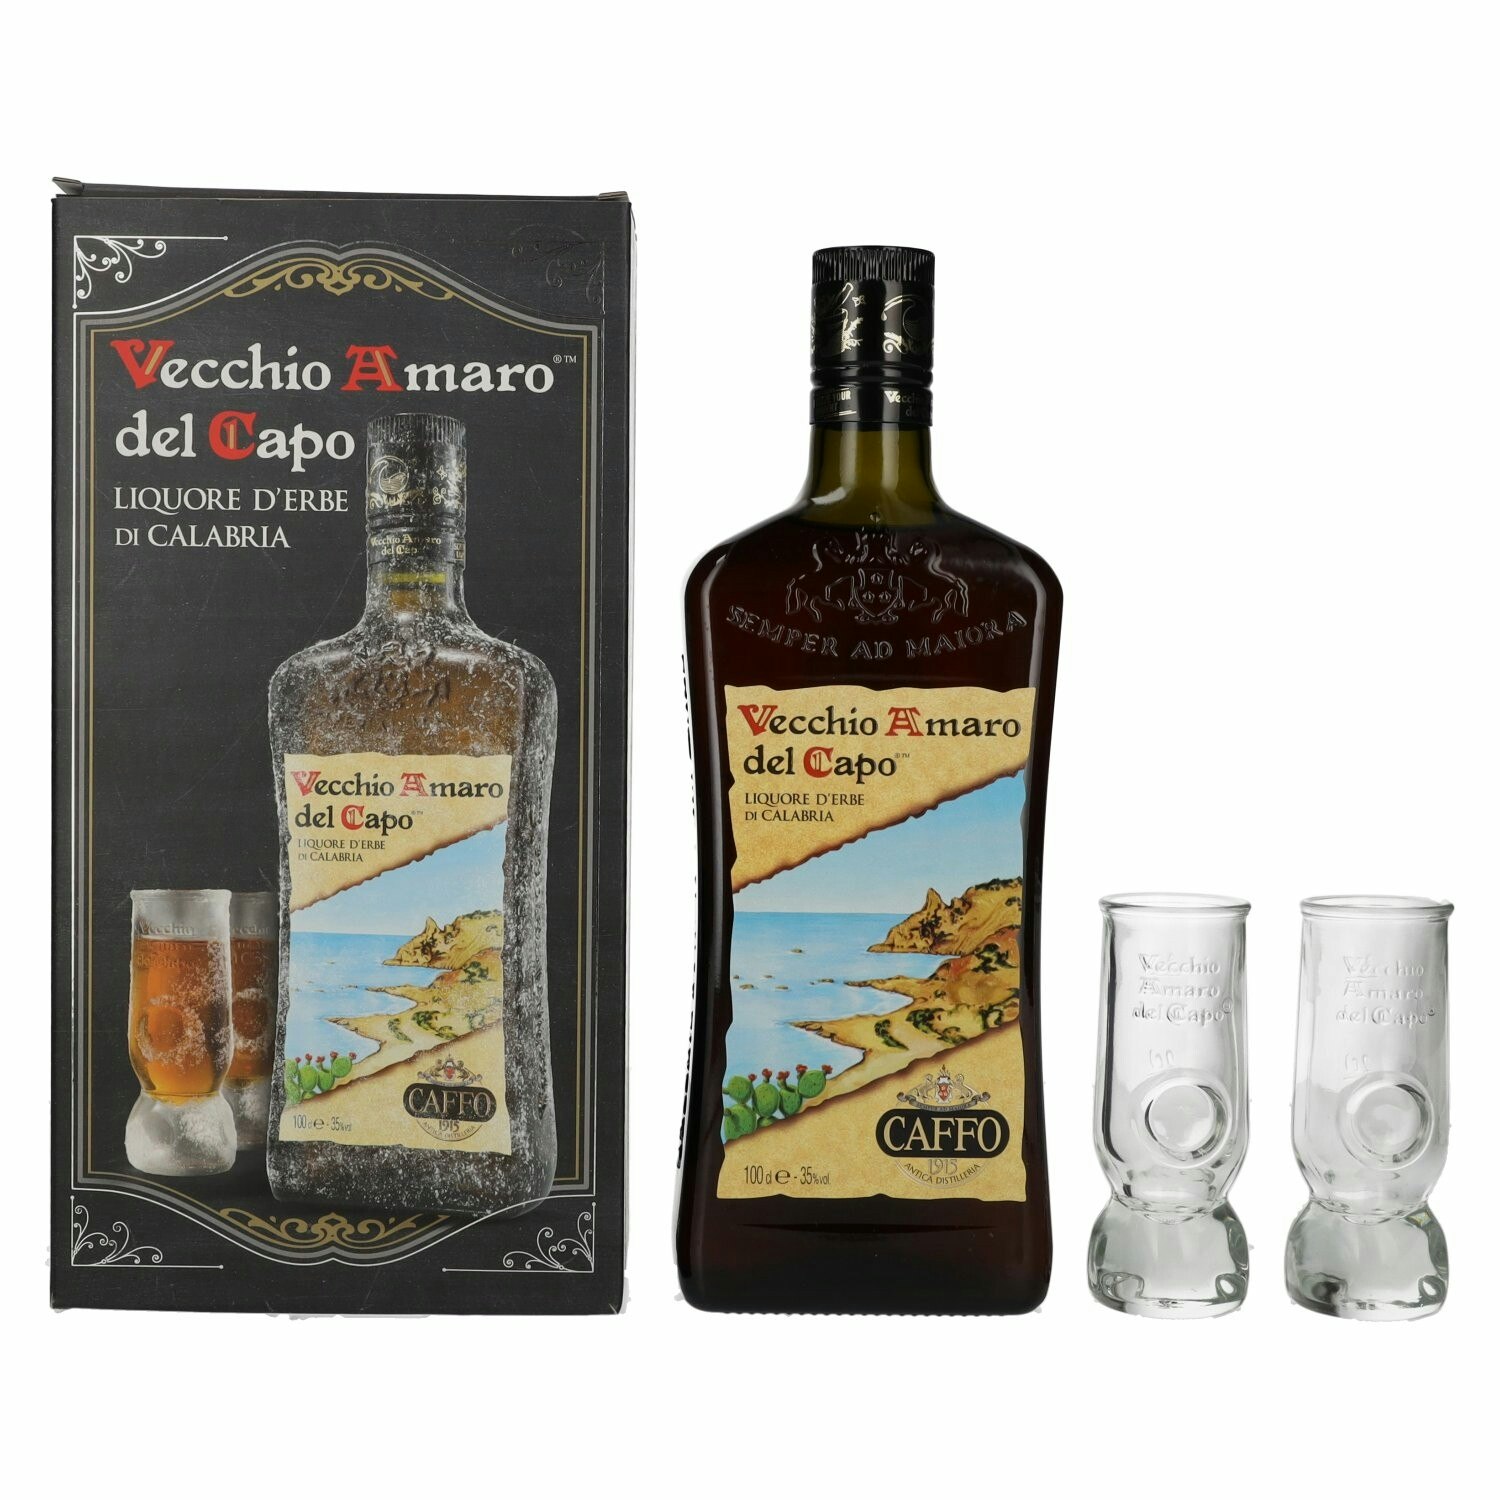 Vecchio Amaro del Capo Caffo Liquore 35% Vol. 1l in Giftbox with 2 glasses